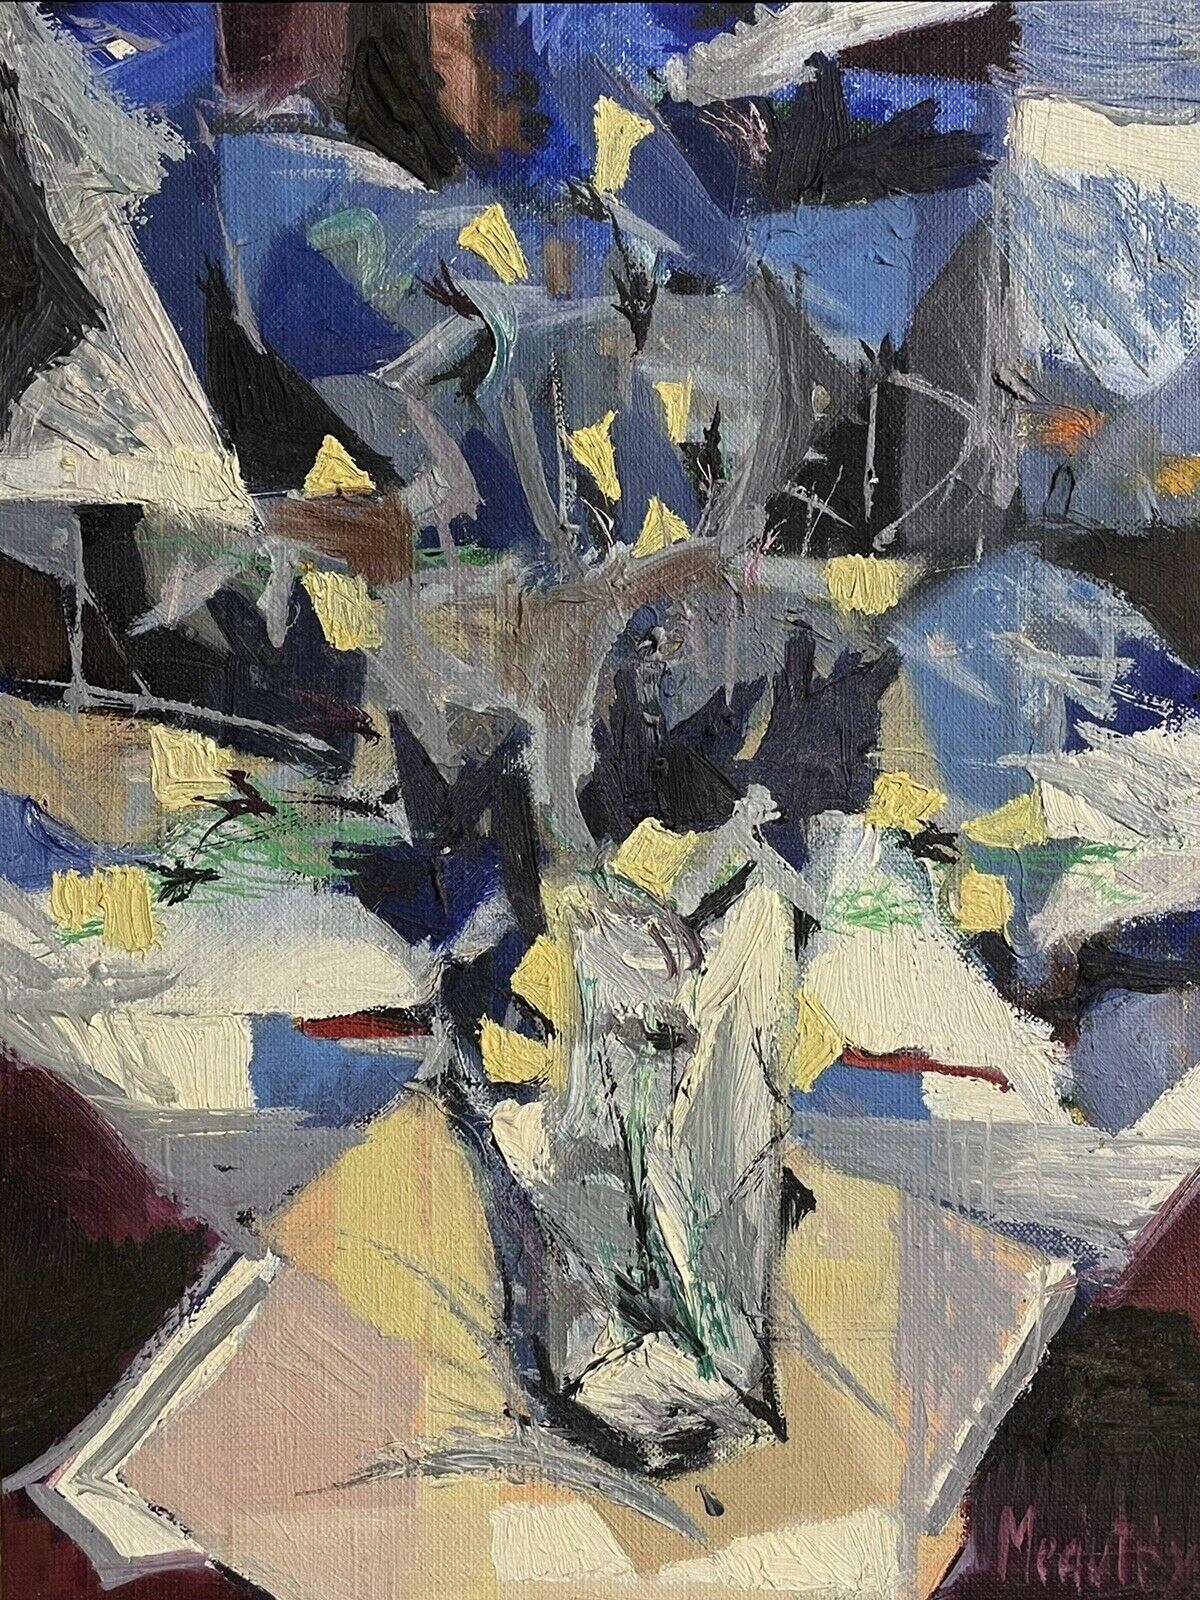 Peinture à l'huile abstraite cubiste française des années 1970 signée, fleurs bleues et blanches dans un vase - Cubisme Painting par French cubist